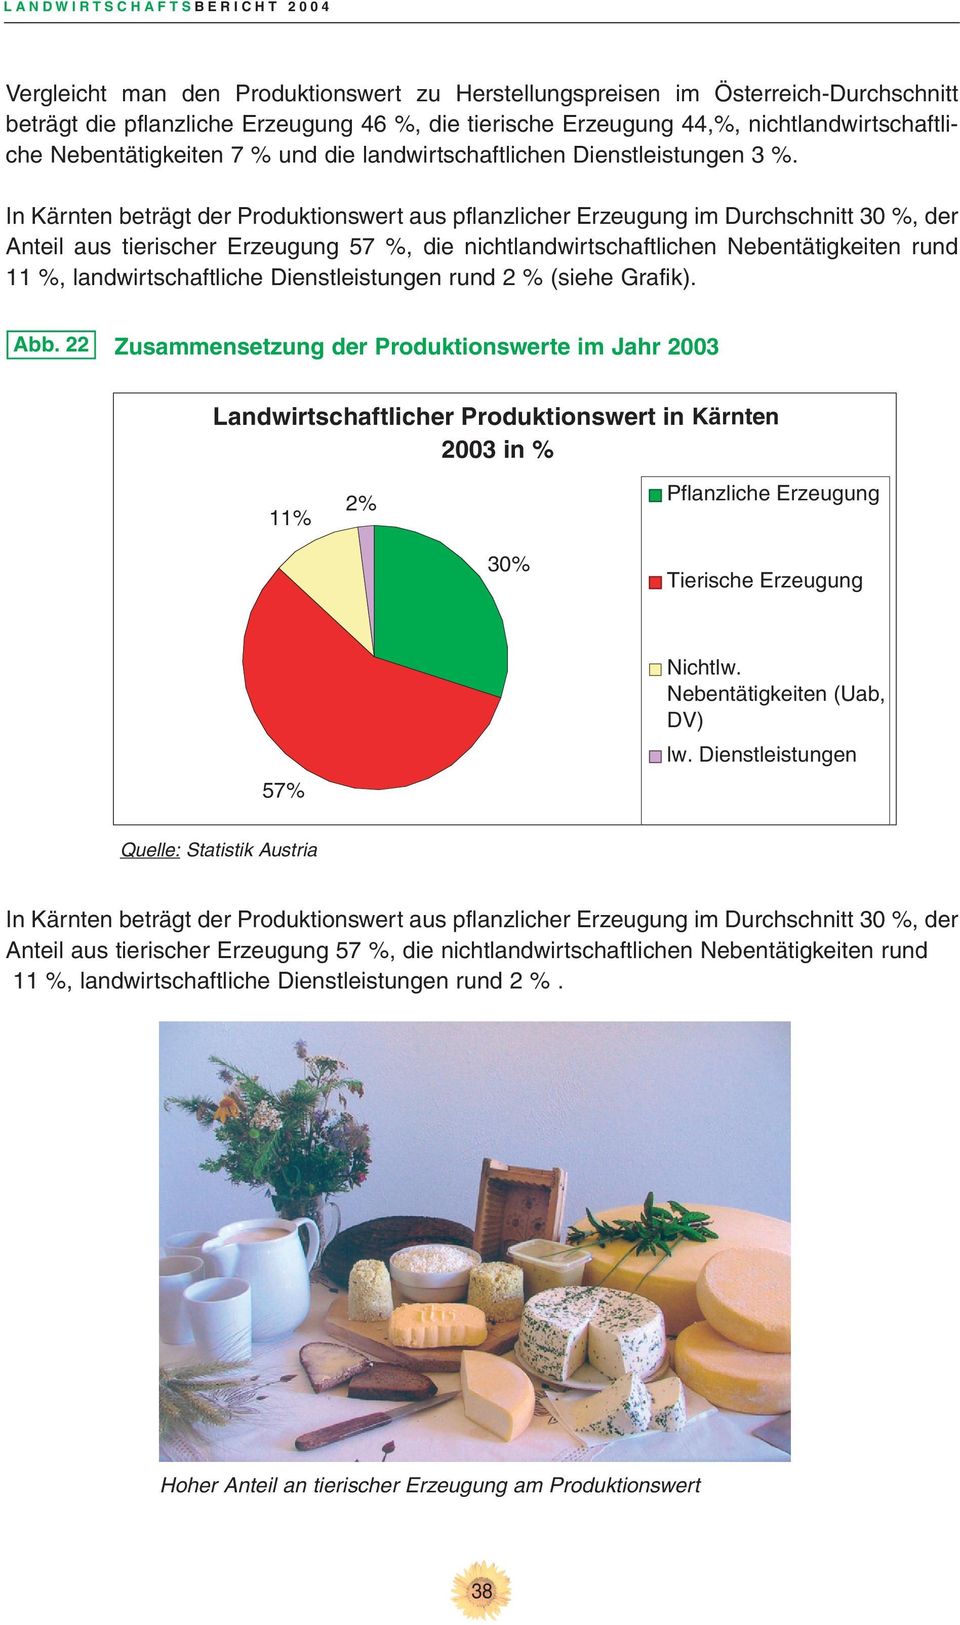 In Kärnten beträgt der Produktionswert aus pflanzlicher Erzeugung im Durchschnitt 30 %, der Anteil aus tierischer Erzeugung 57 %, die nichtlandwirtschaftlichen Nebentätigkeiten rund 11 %,